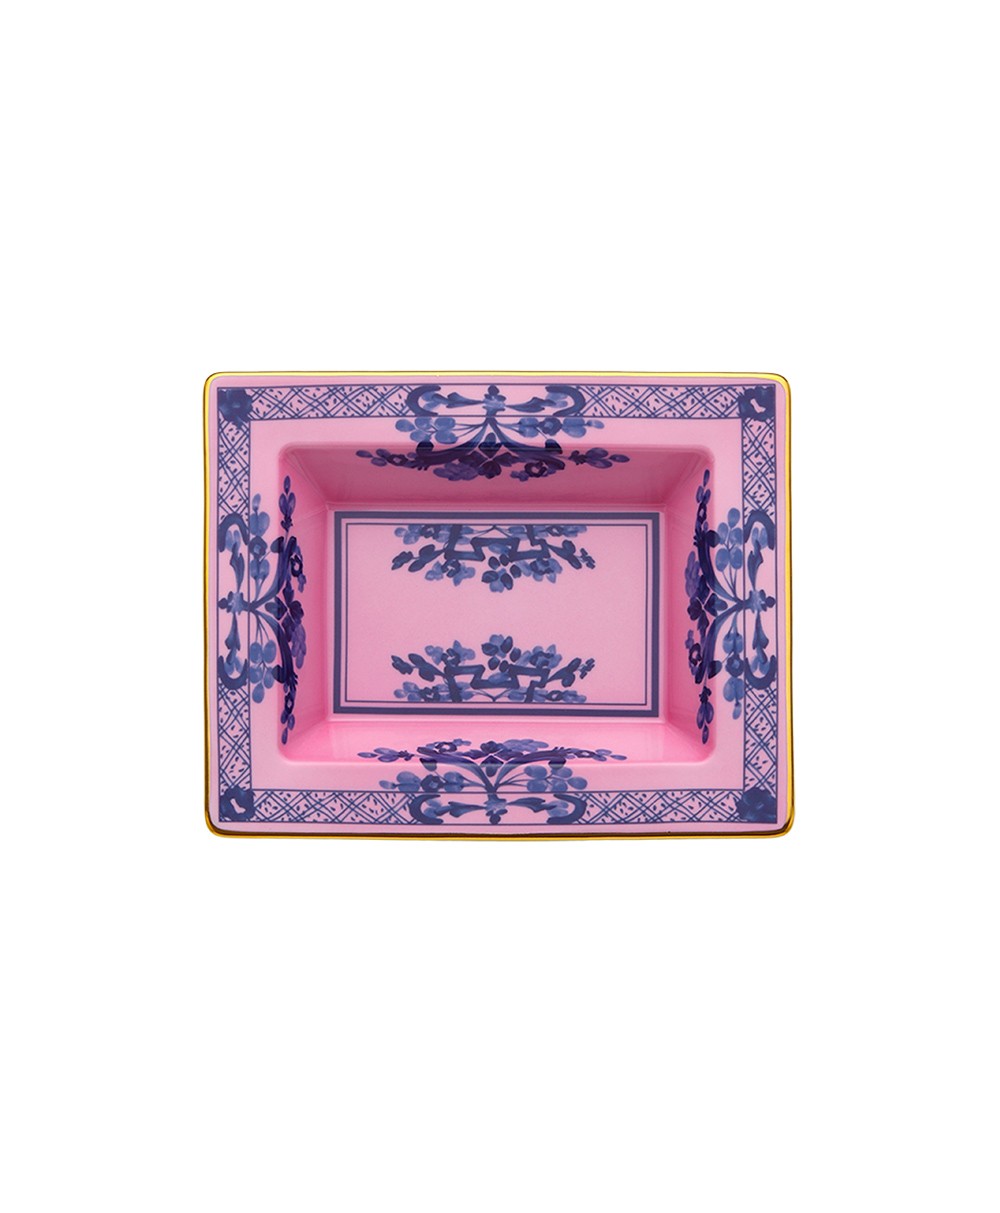 Produktbild "Oriente Azalea Platte" von Ginori 1735 im RAUM Concept store